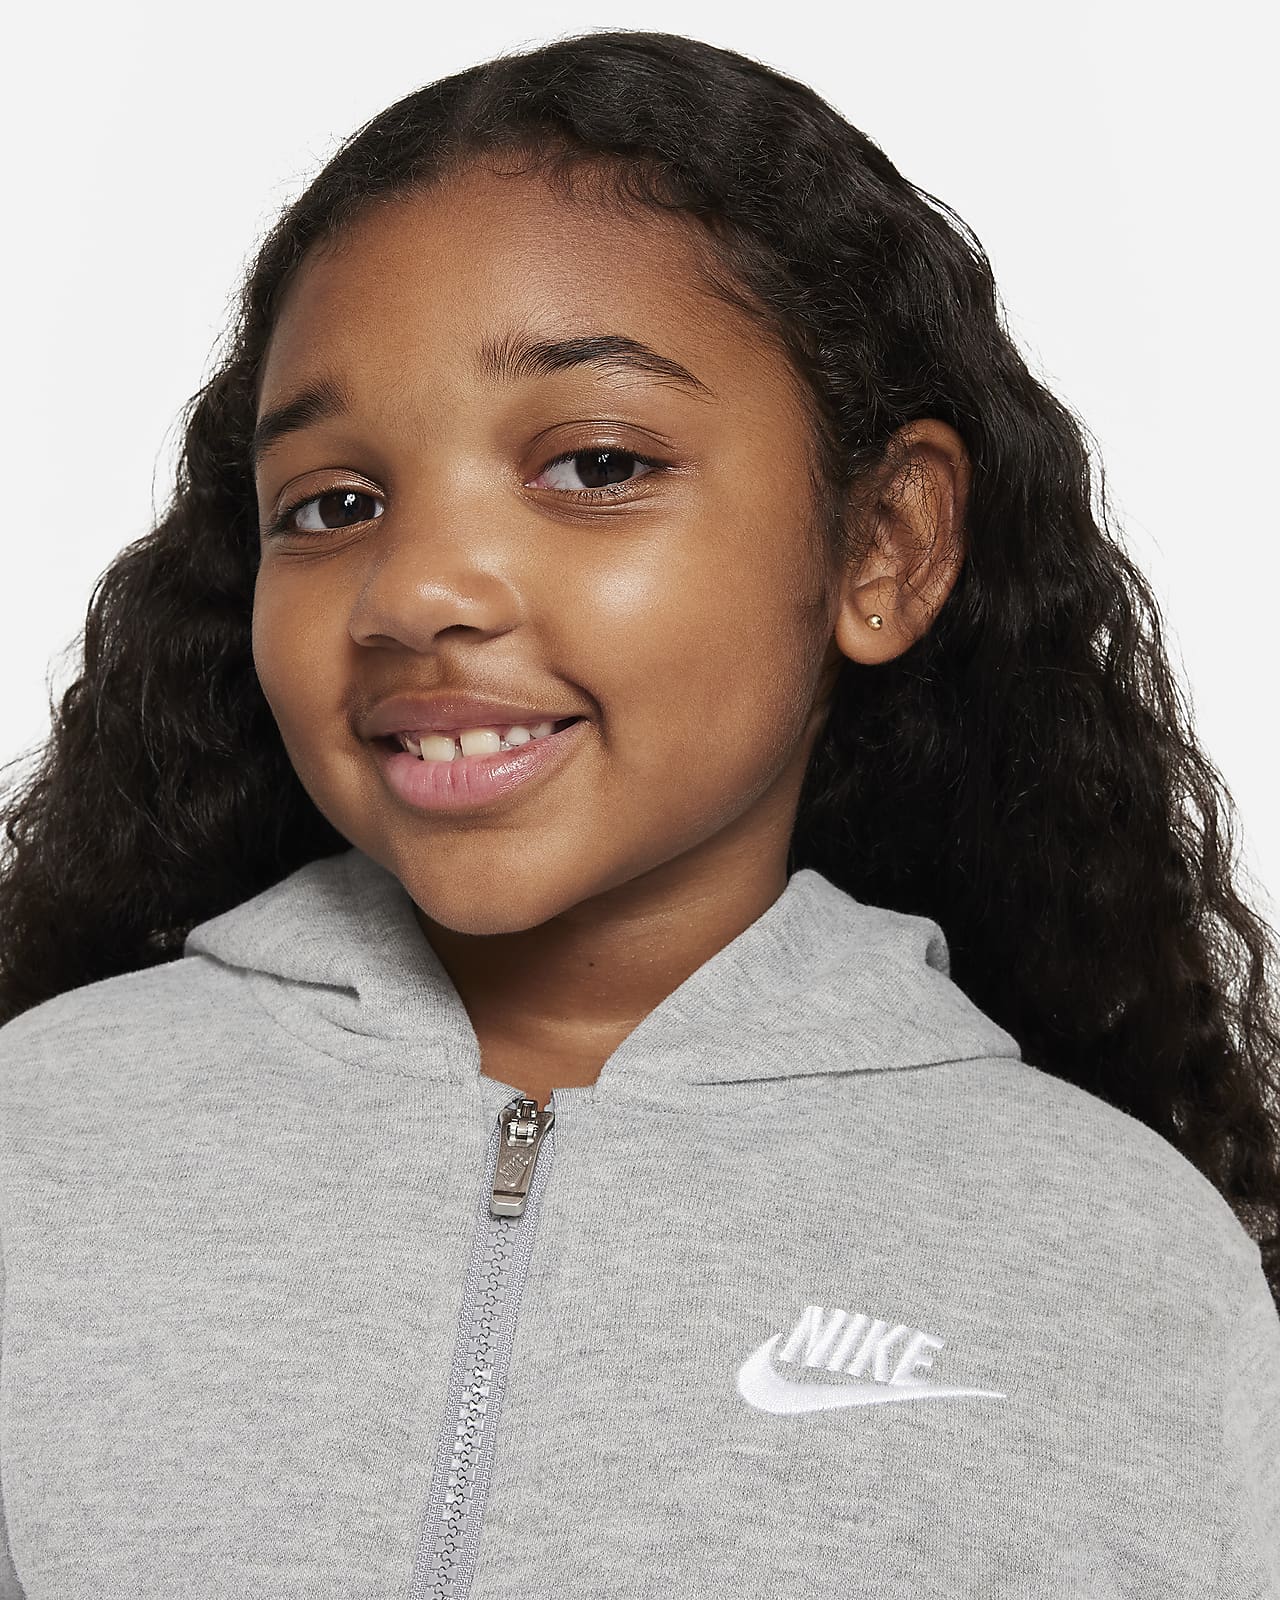 Nike Sportswear Club Fleece Full-Zip Little Kids Hoodie.